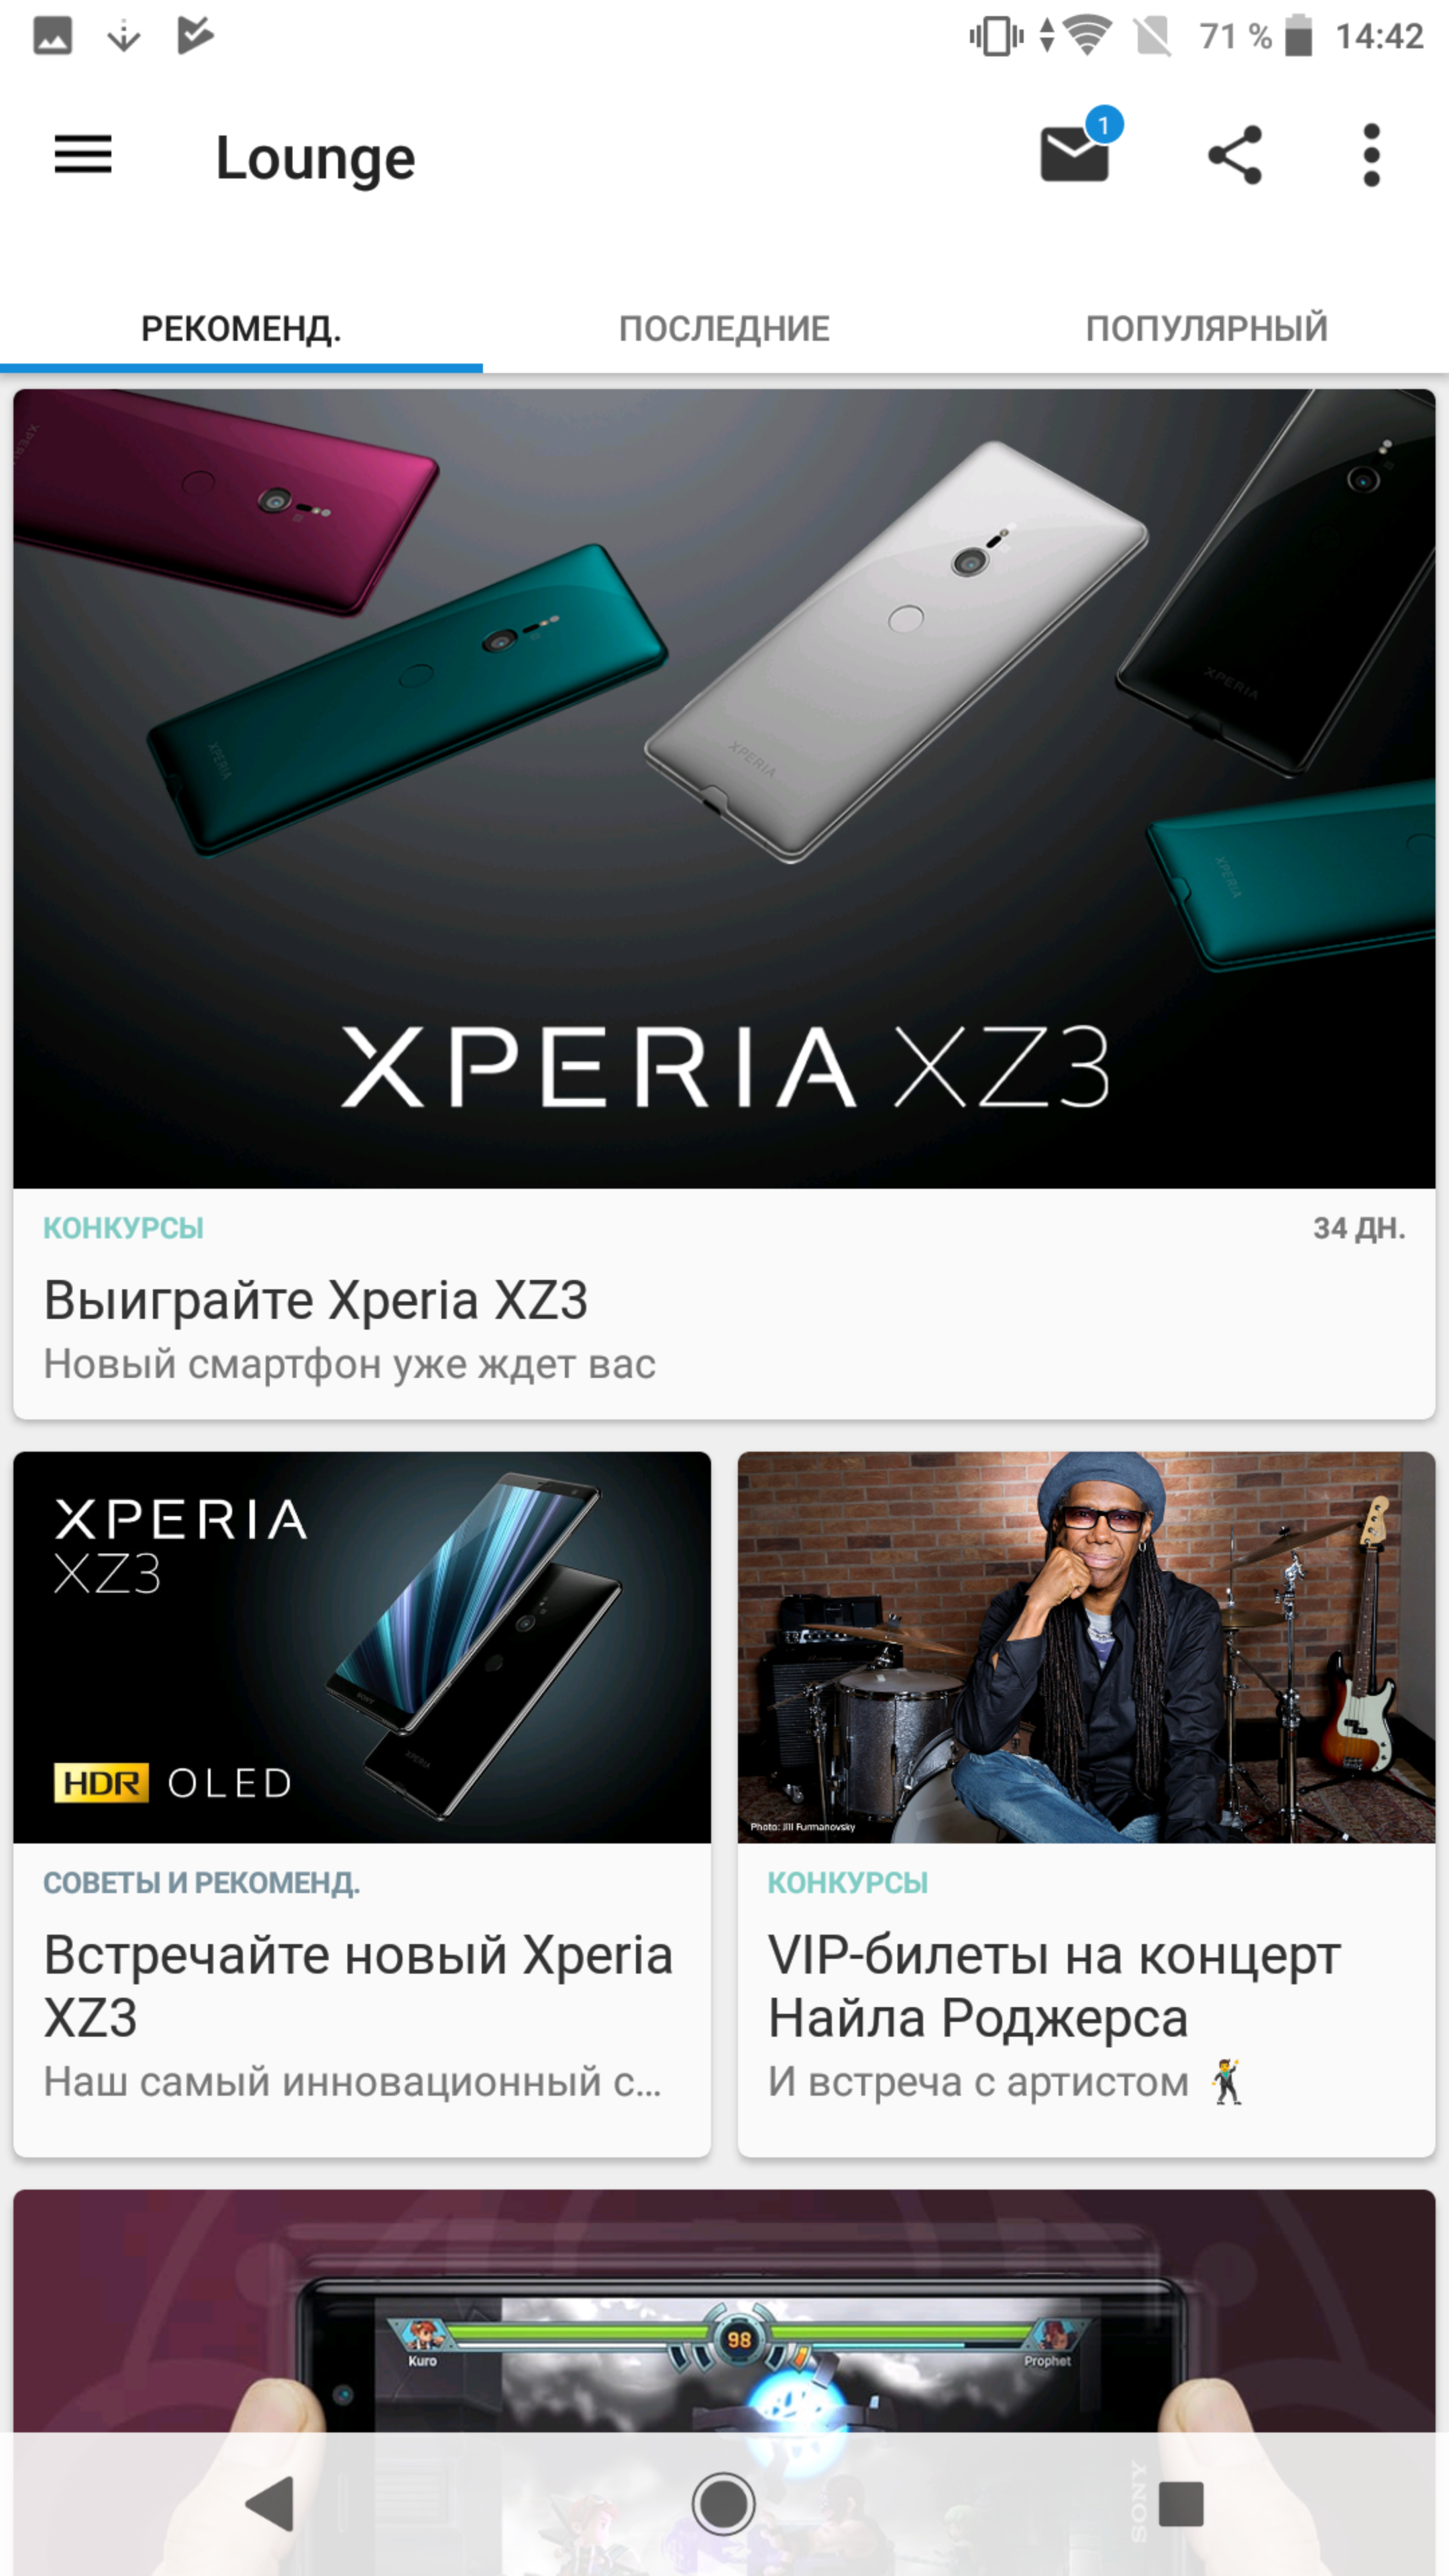 Обзор Sony Xperia XZ2 Premium: флагман с двойной камерой и 4K HDR дисплеем-225